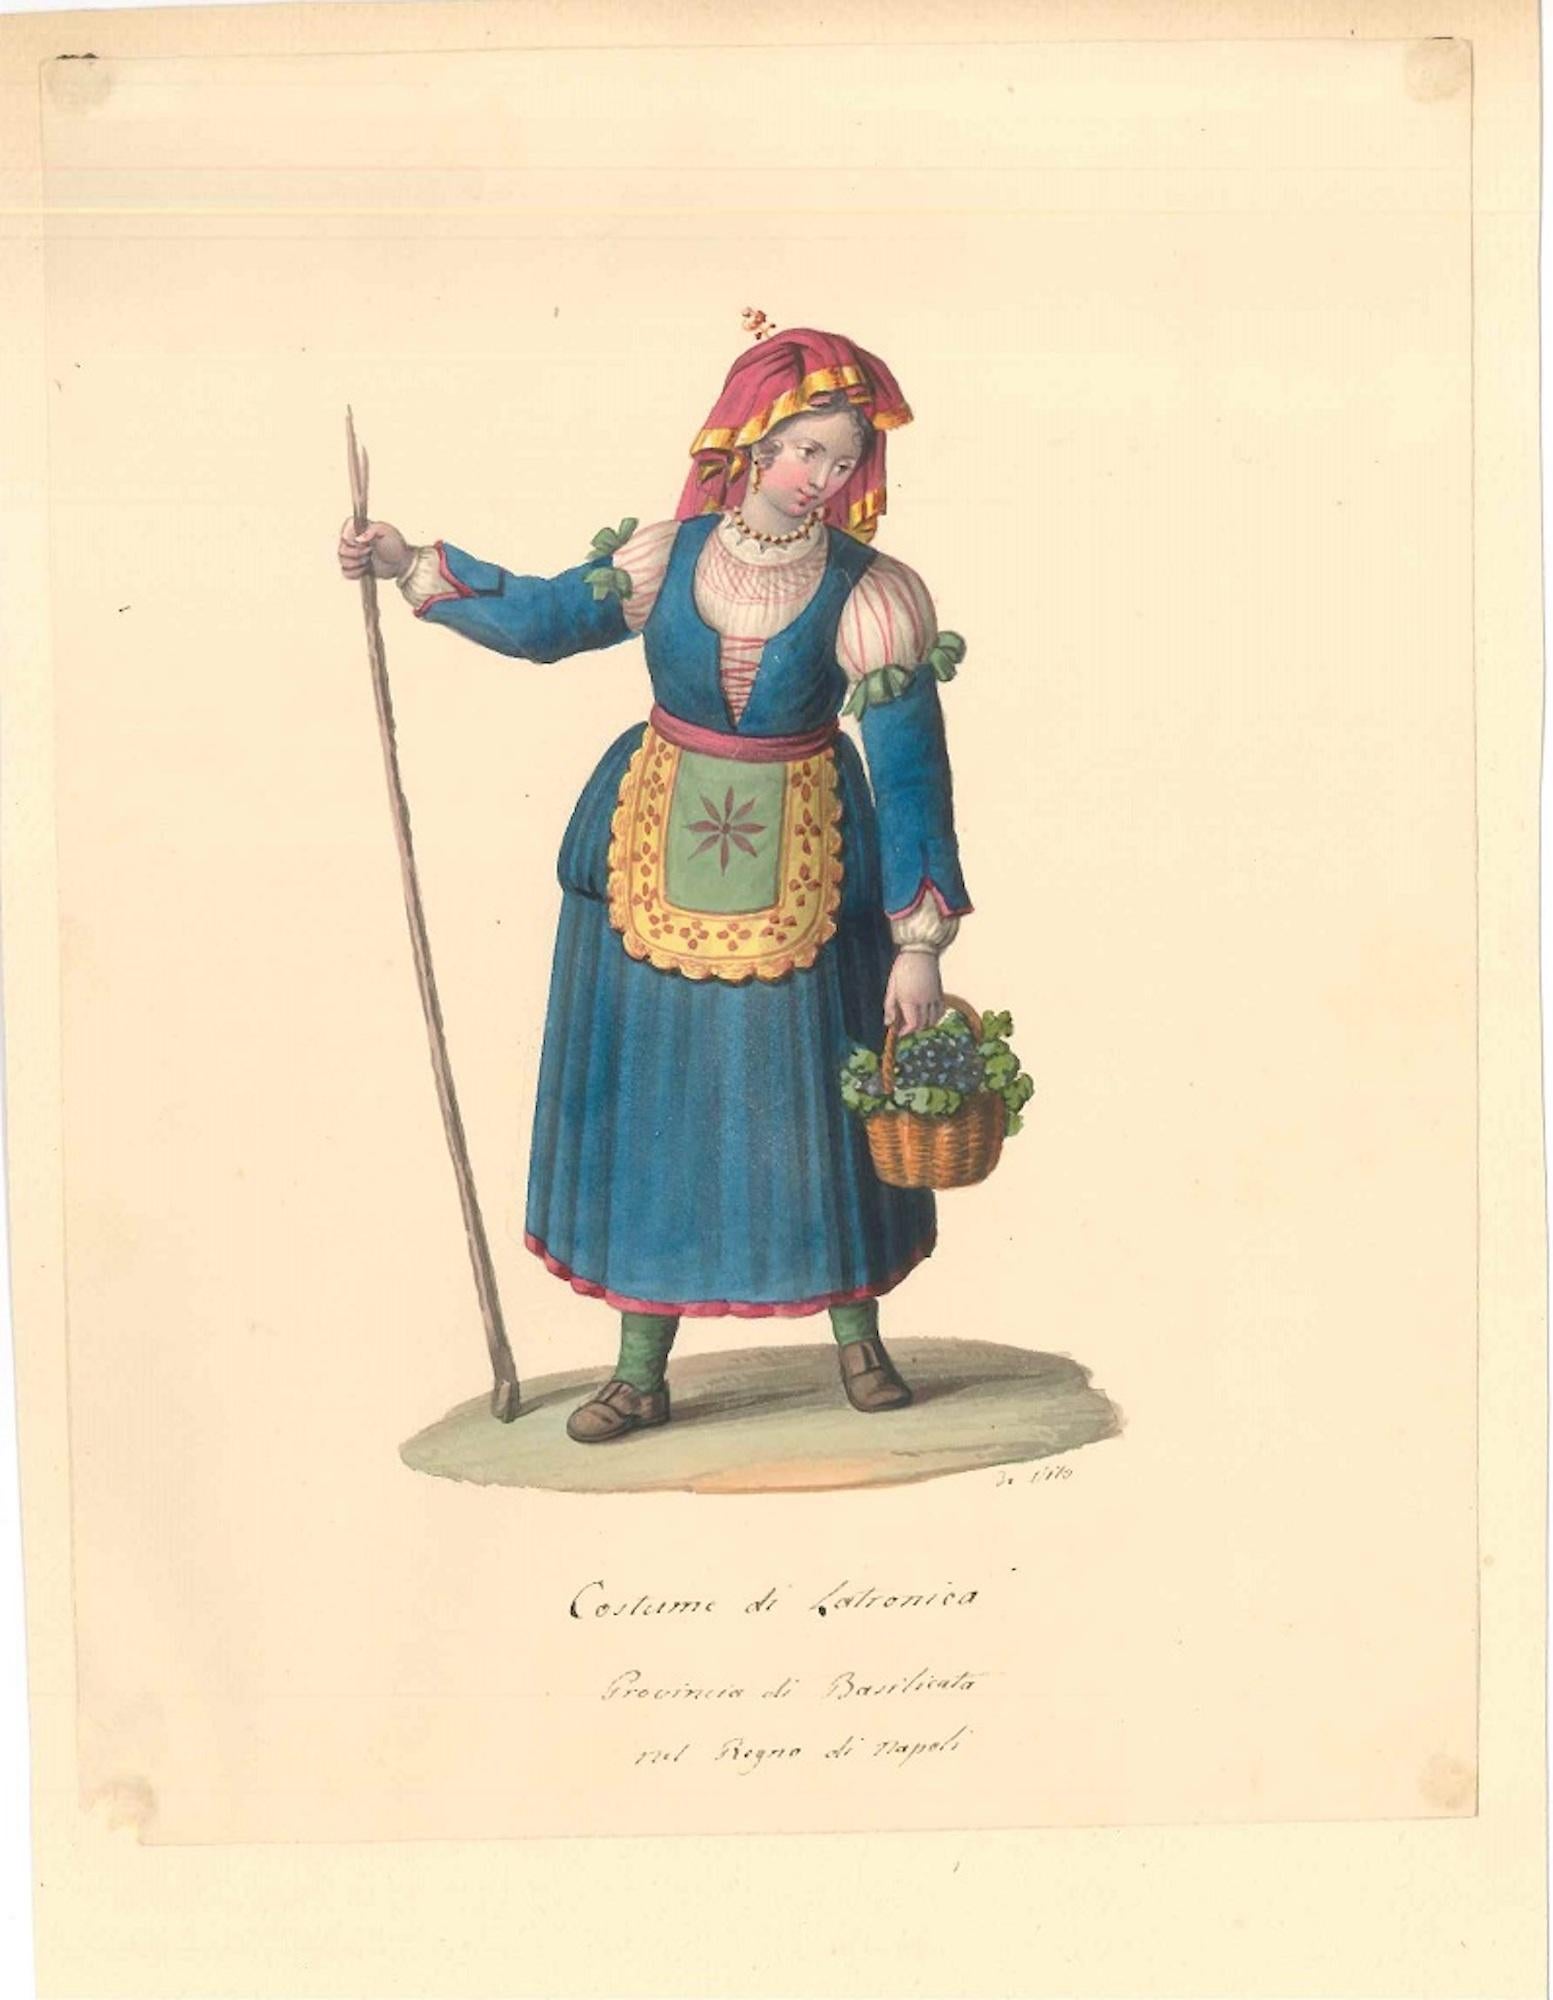 Michela De Vito Figurative Art - Costume di Latronica   - Watercolor by M. De Vito - 1820 ca.